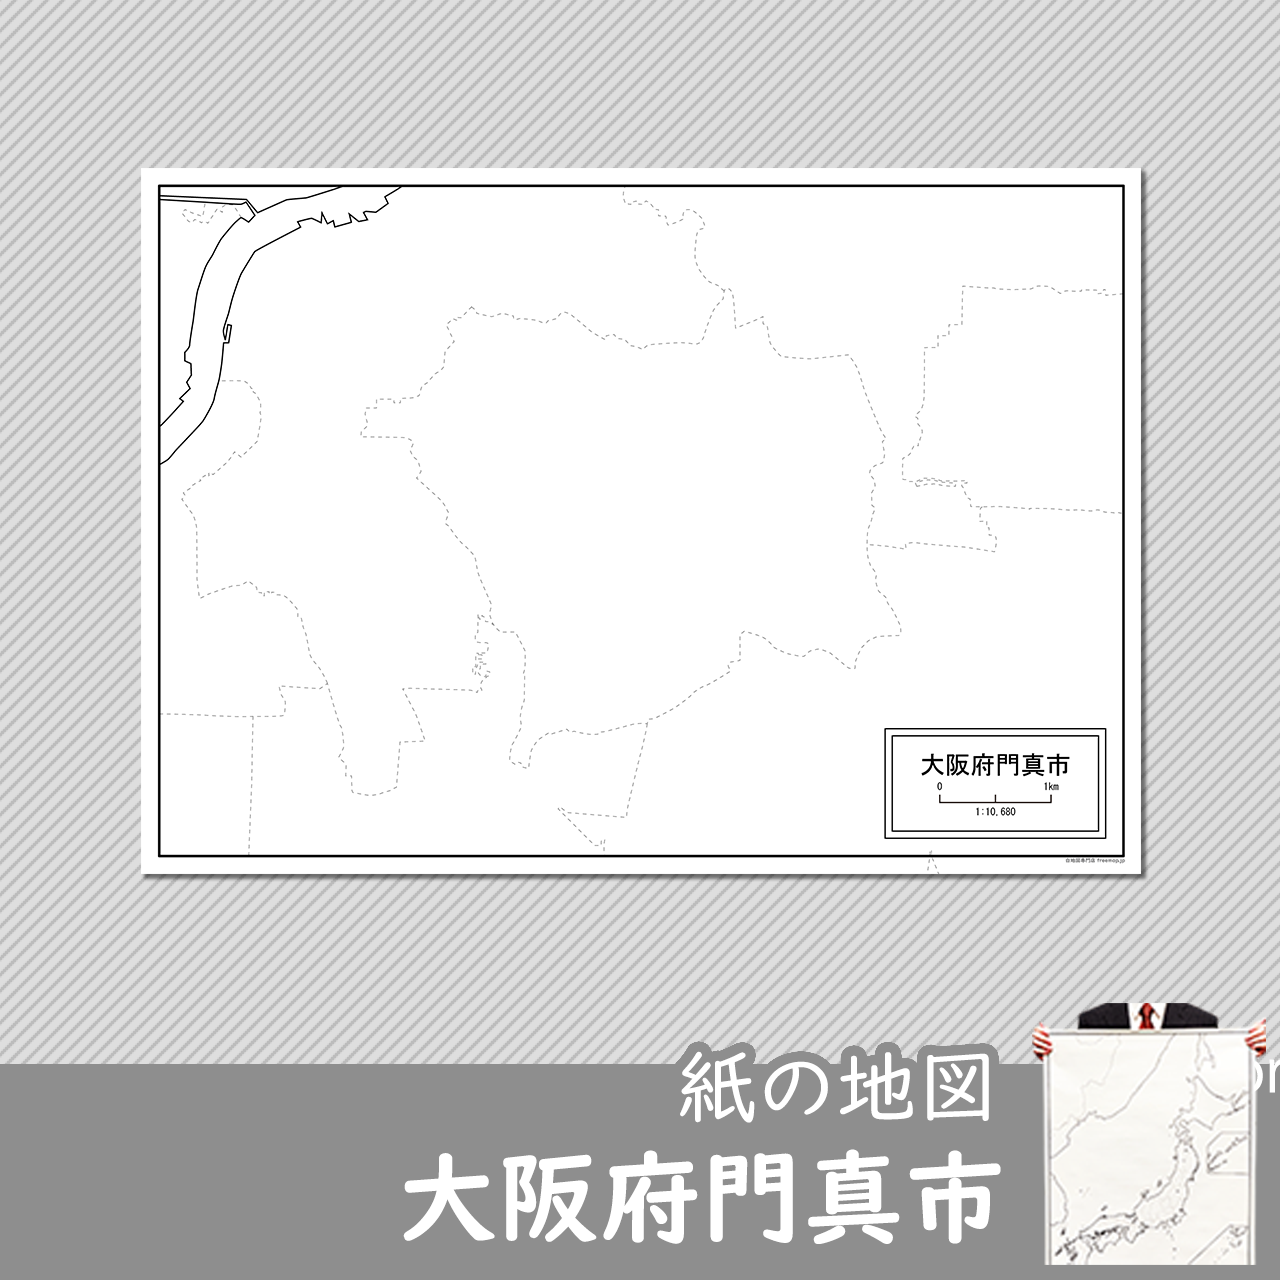 門真市の紙の白地図のサムネイル